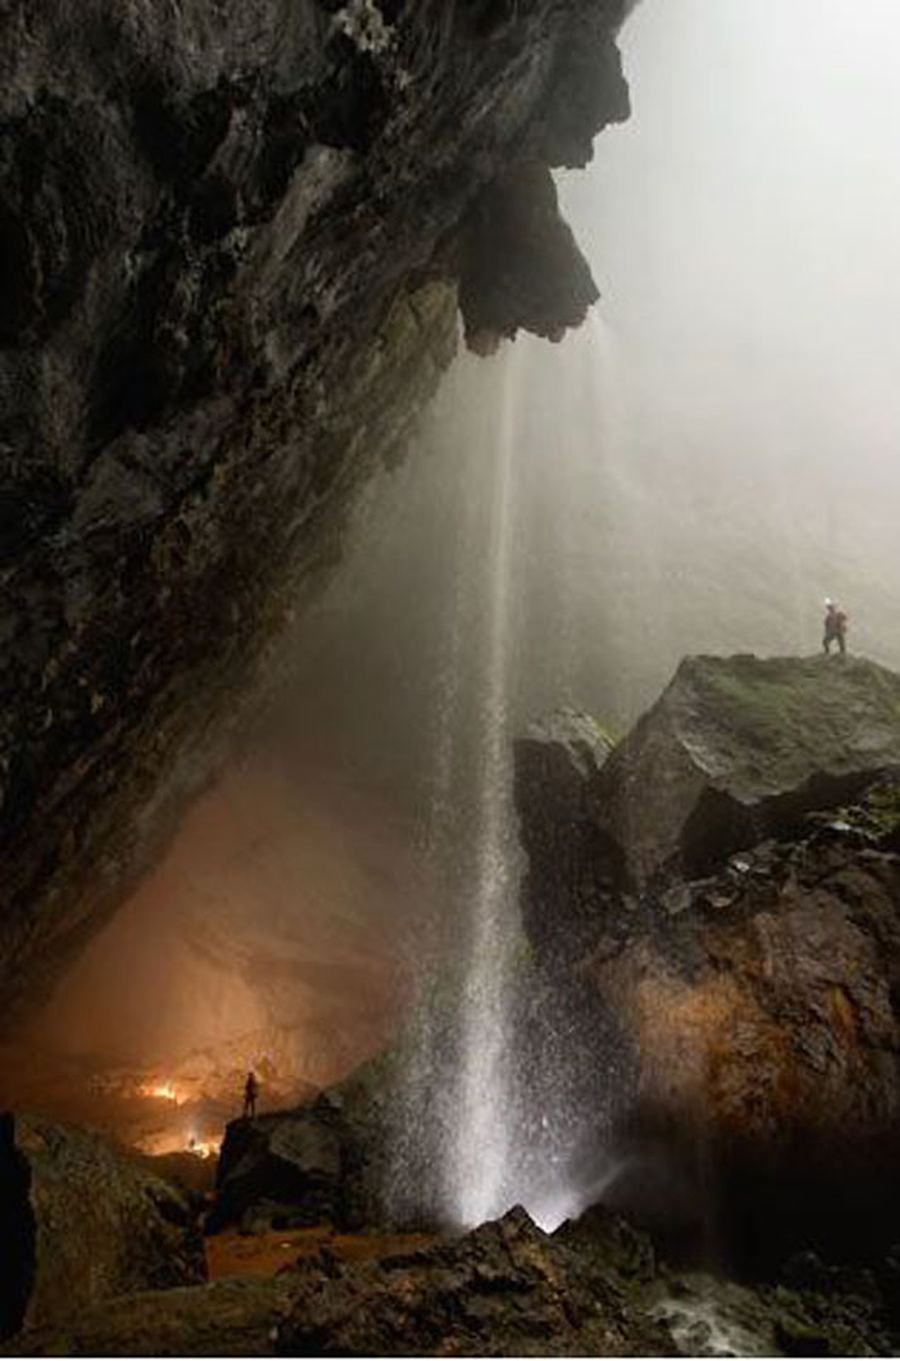 Хан Сон Дунг (Пещера горной реки)